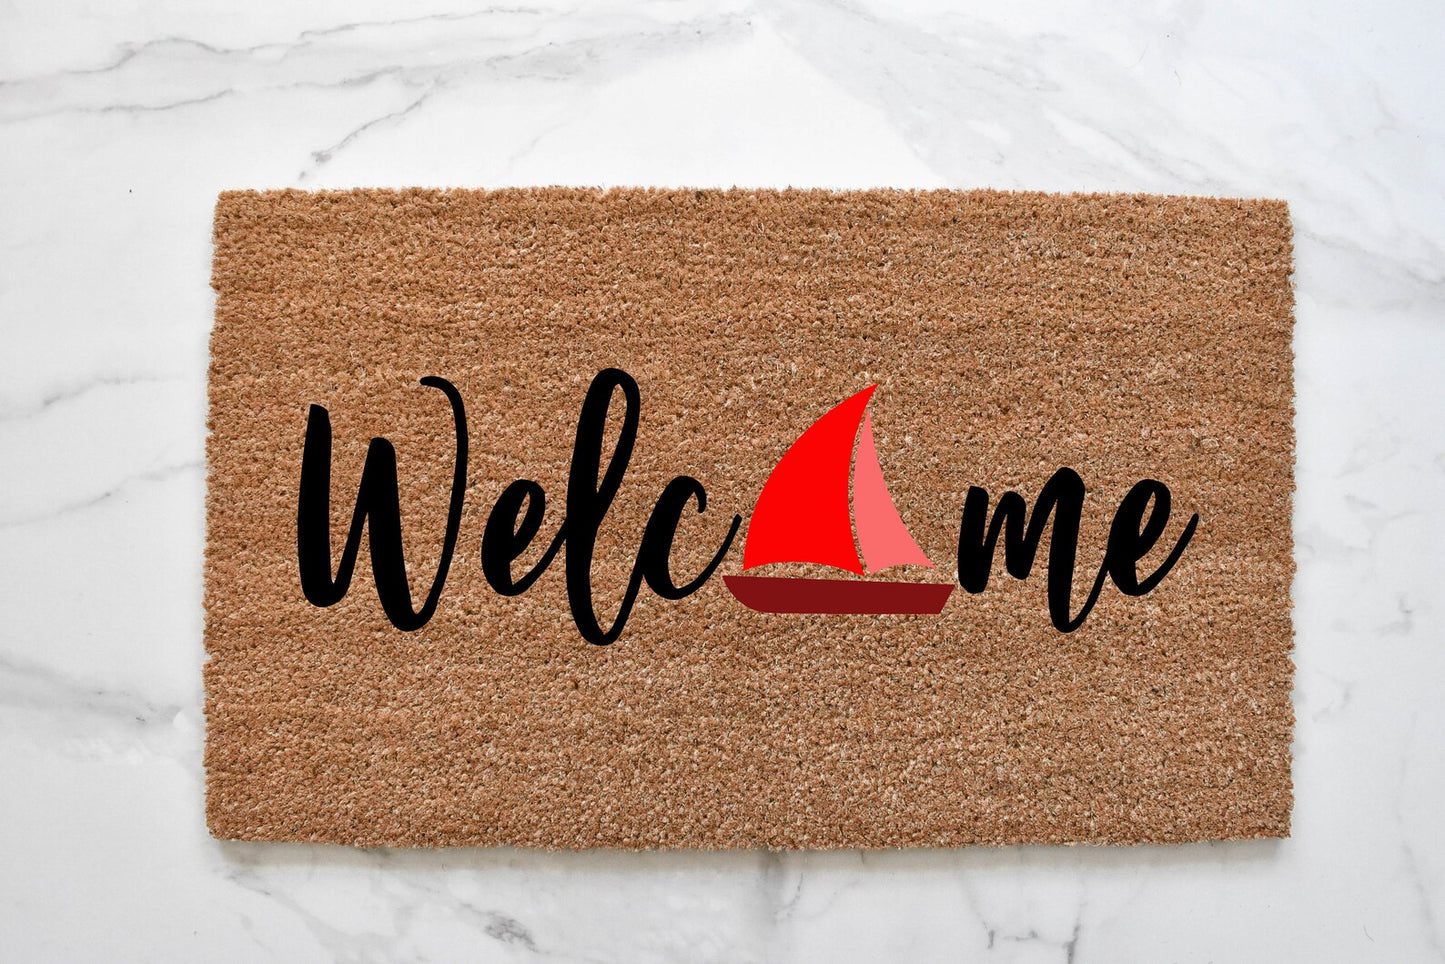 Welcome + Sailboat Doormat